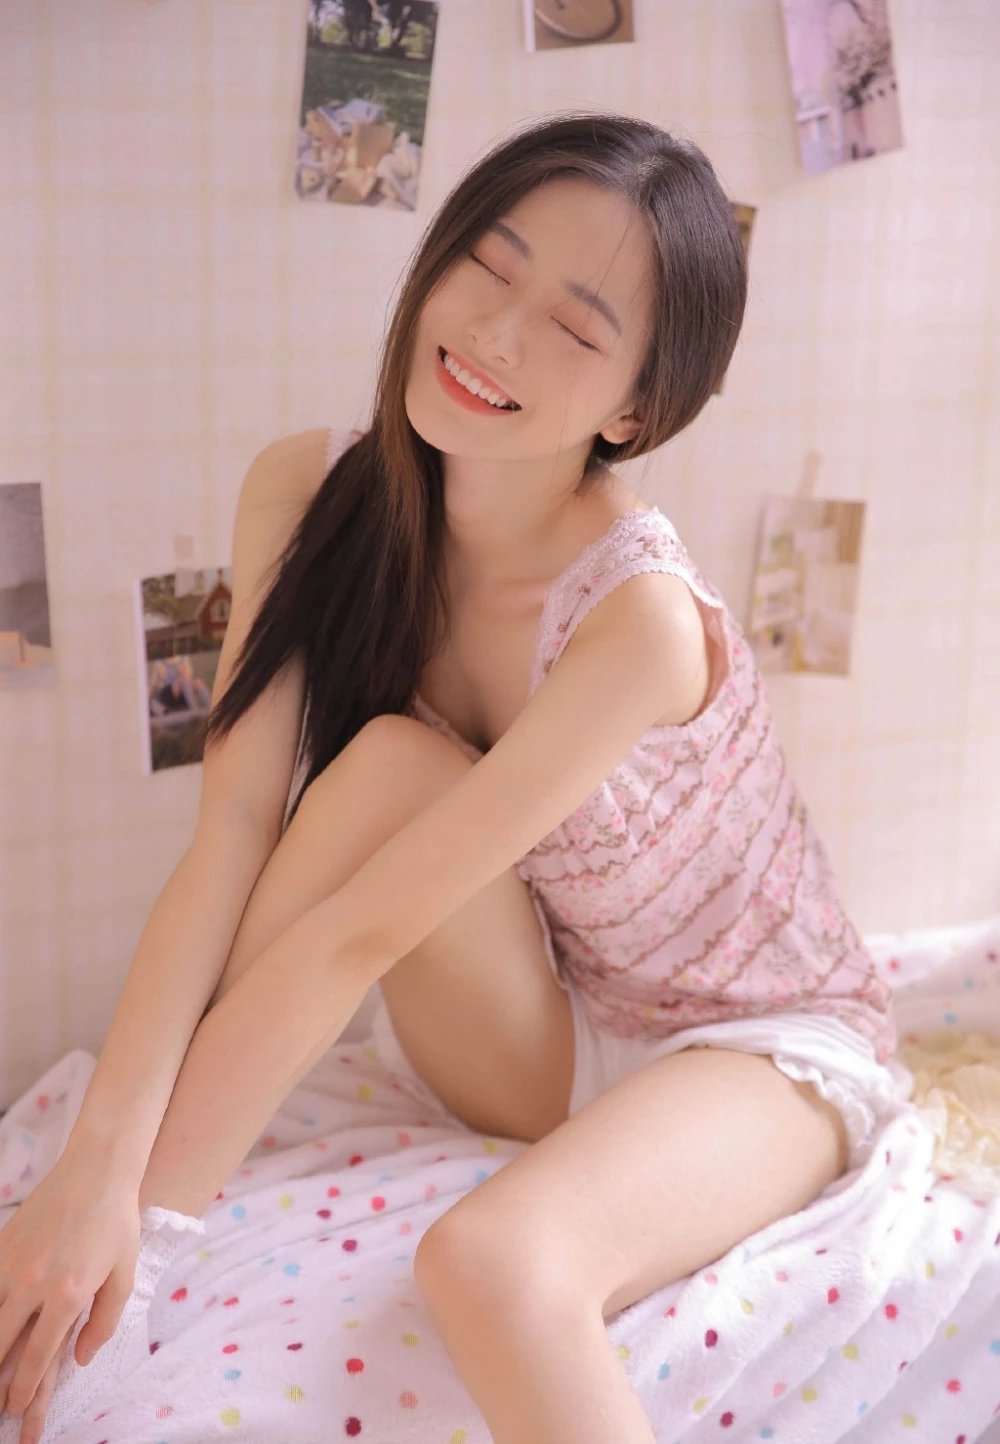 背心短裤少女床上美腿撩人日系摄影